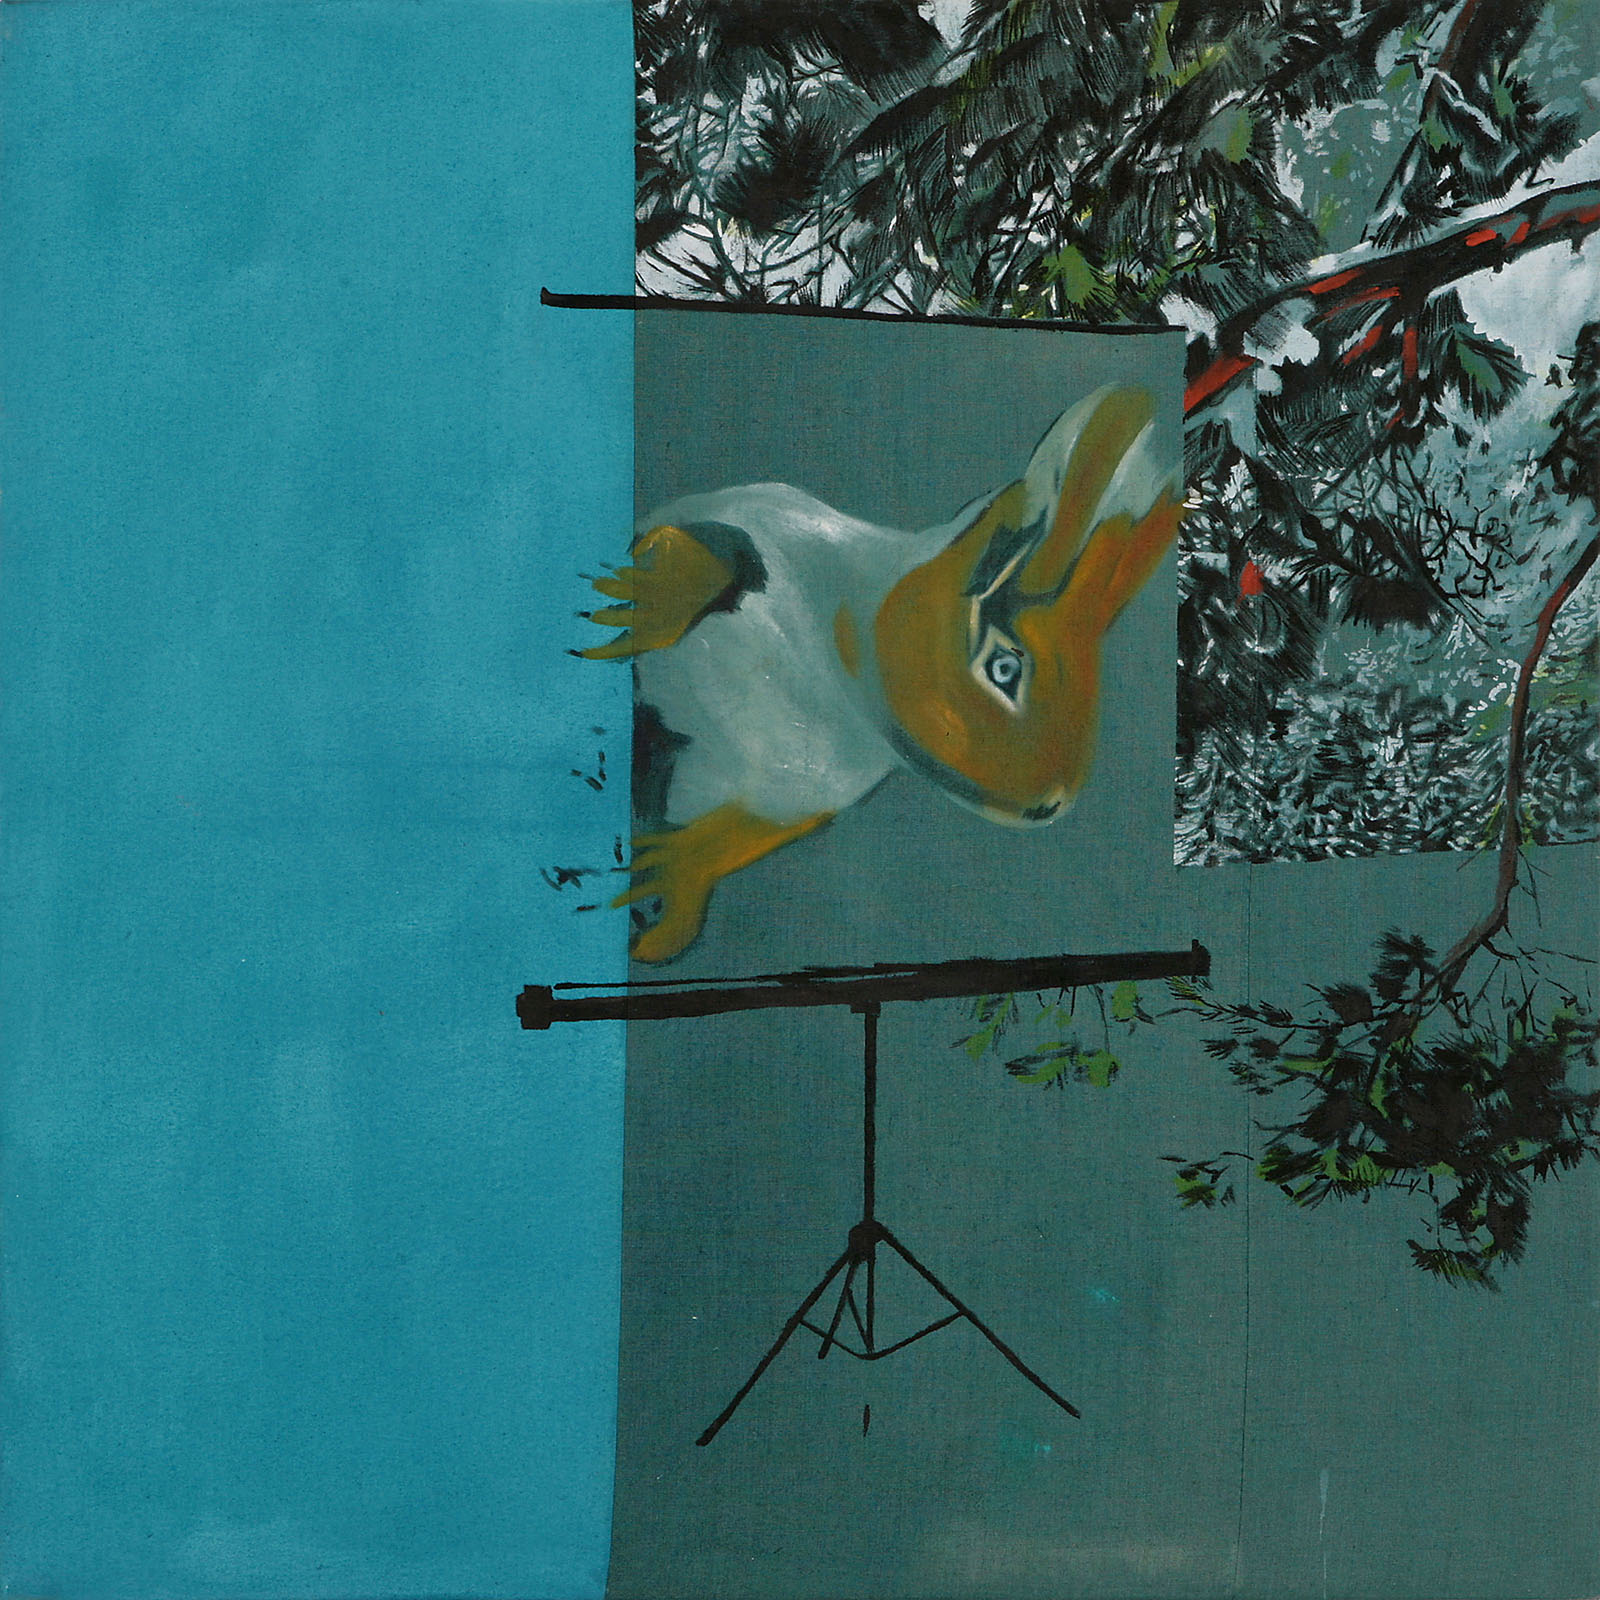 o.T. aus „Krähen Kommen”, 2008, 130 x 130 cm, Mischtechnik auf Leinwand